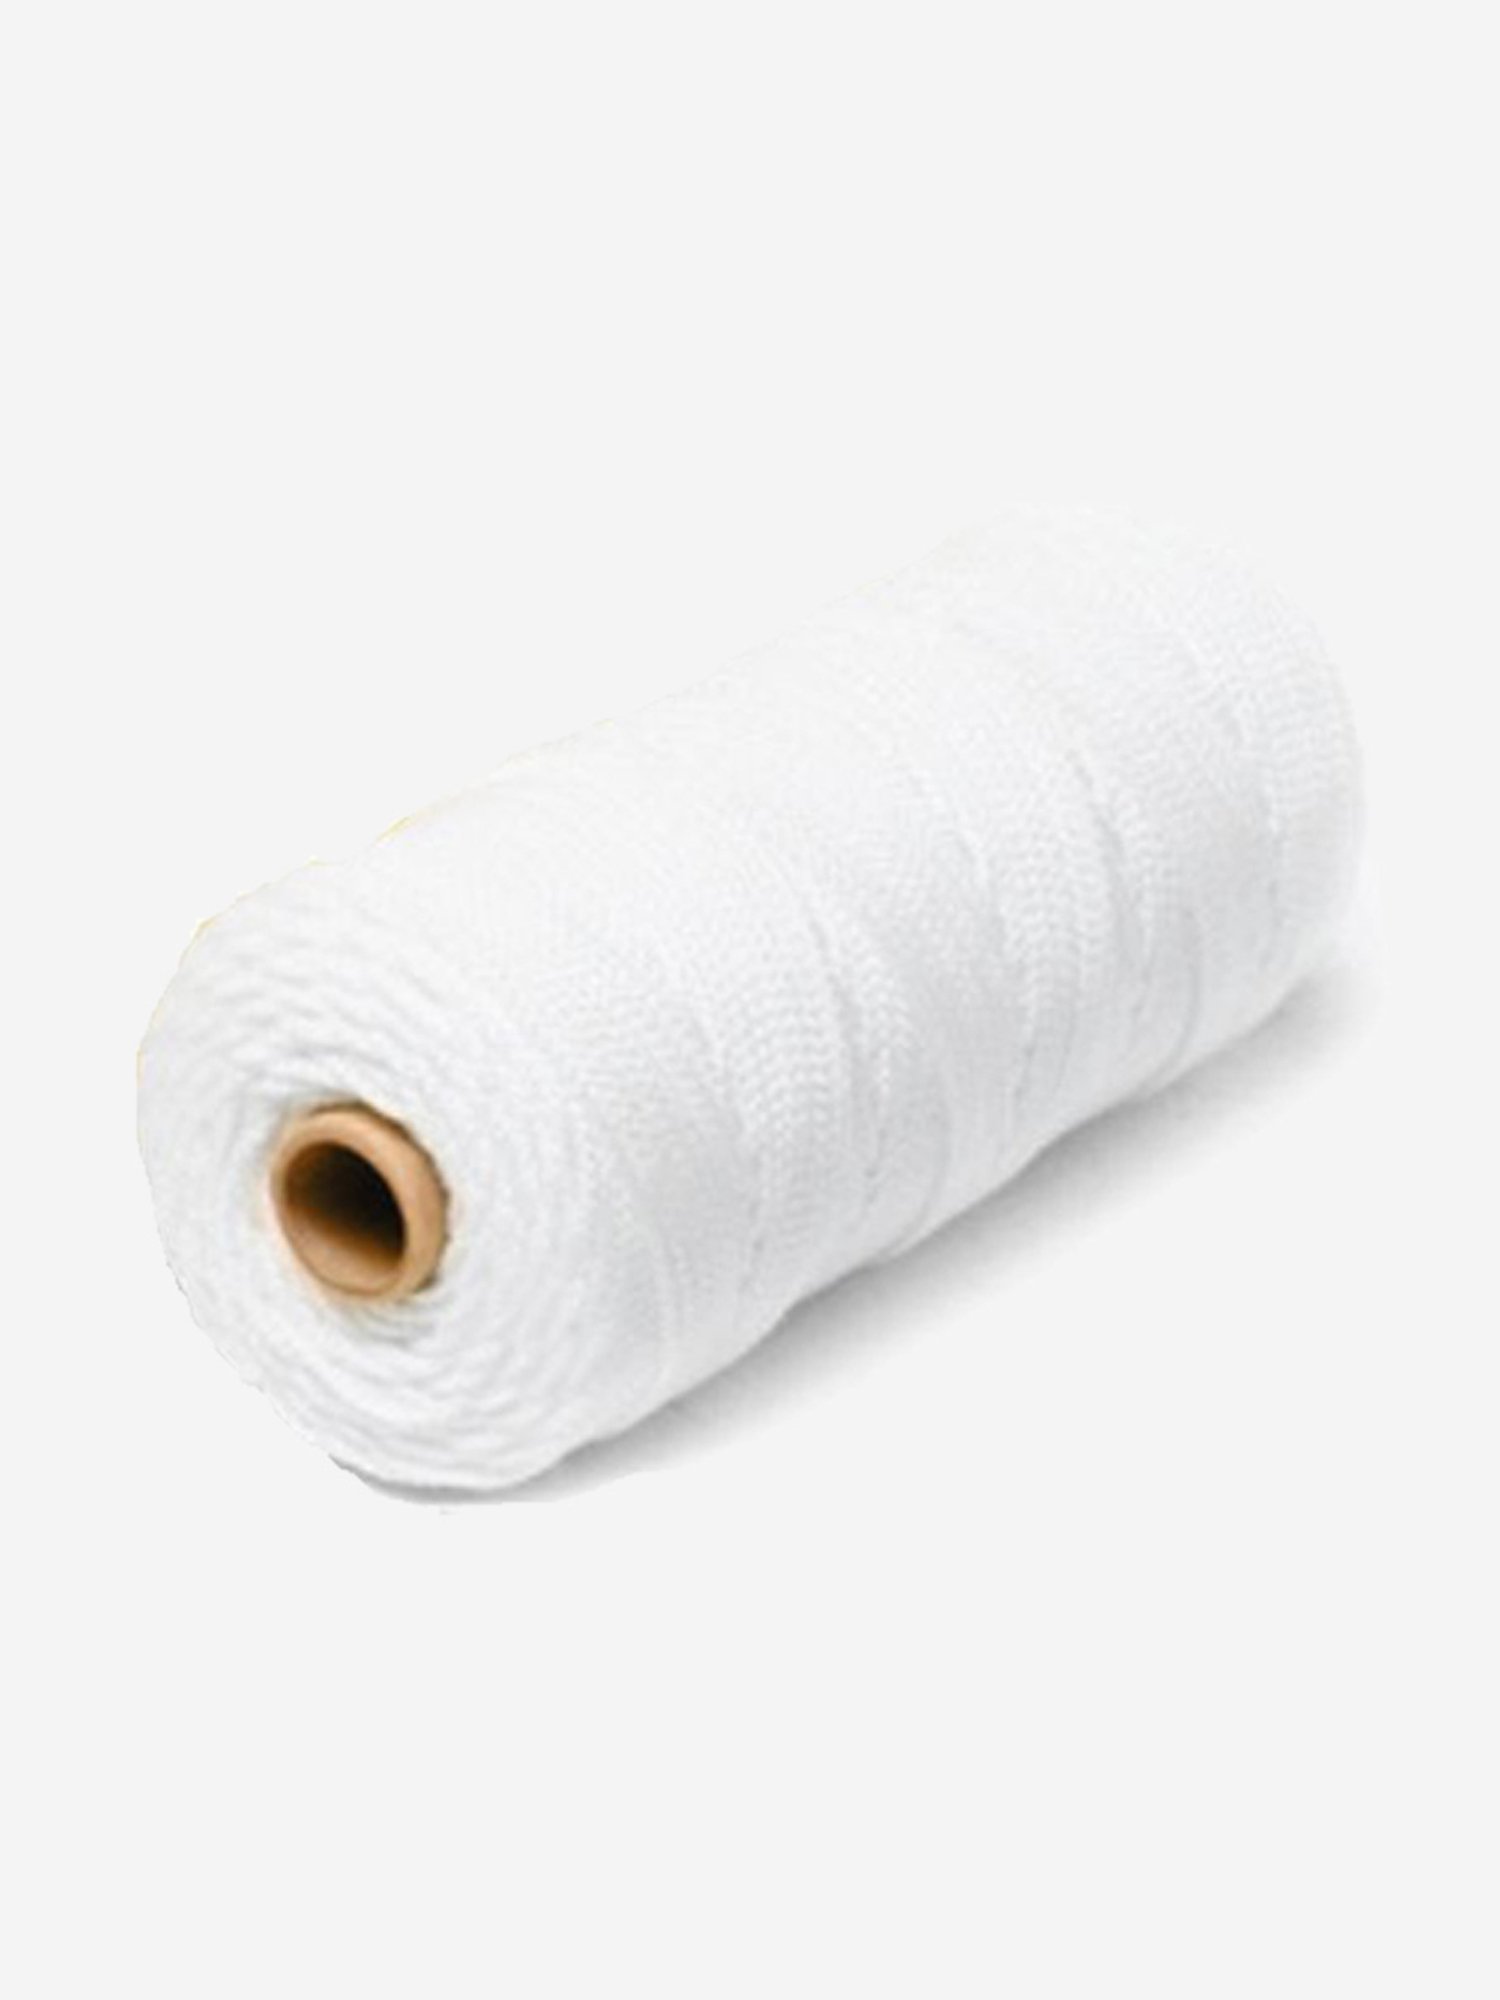 Шнур плетеный Петроканат СТАНДАРТ 15,0 мм (100 м) белый, п/п мешок (промышленный/крепежный), Белый